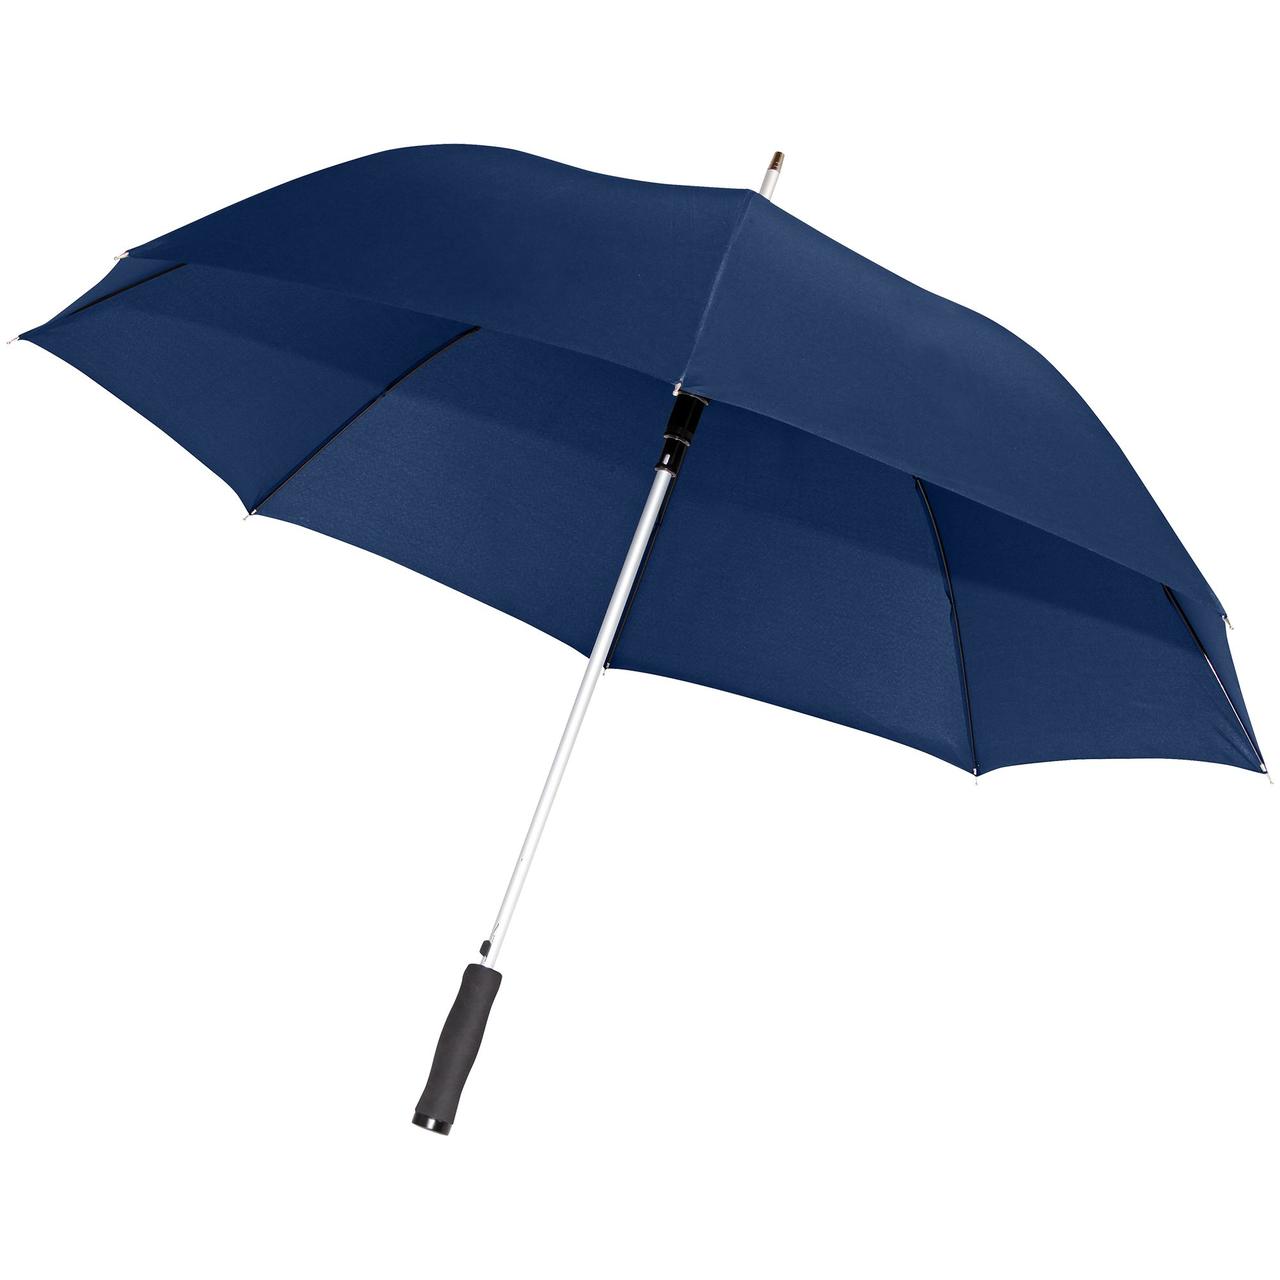 Зонт-трость Alu Golf AC, темно-синий (артикул 11850.40), фото 1